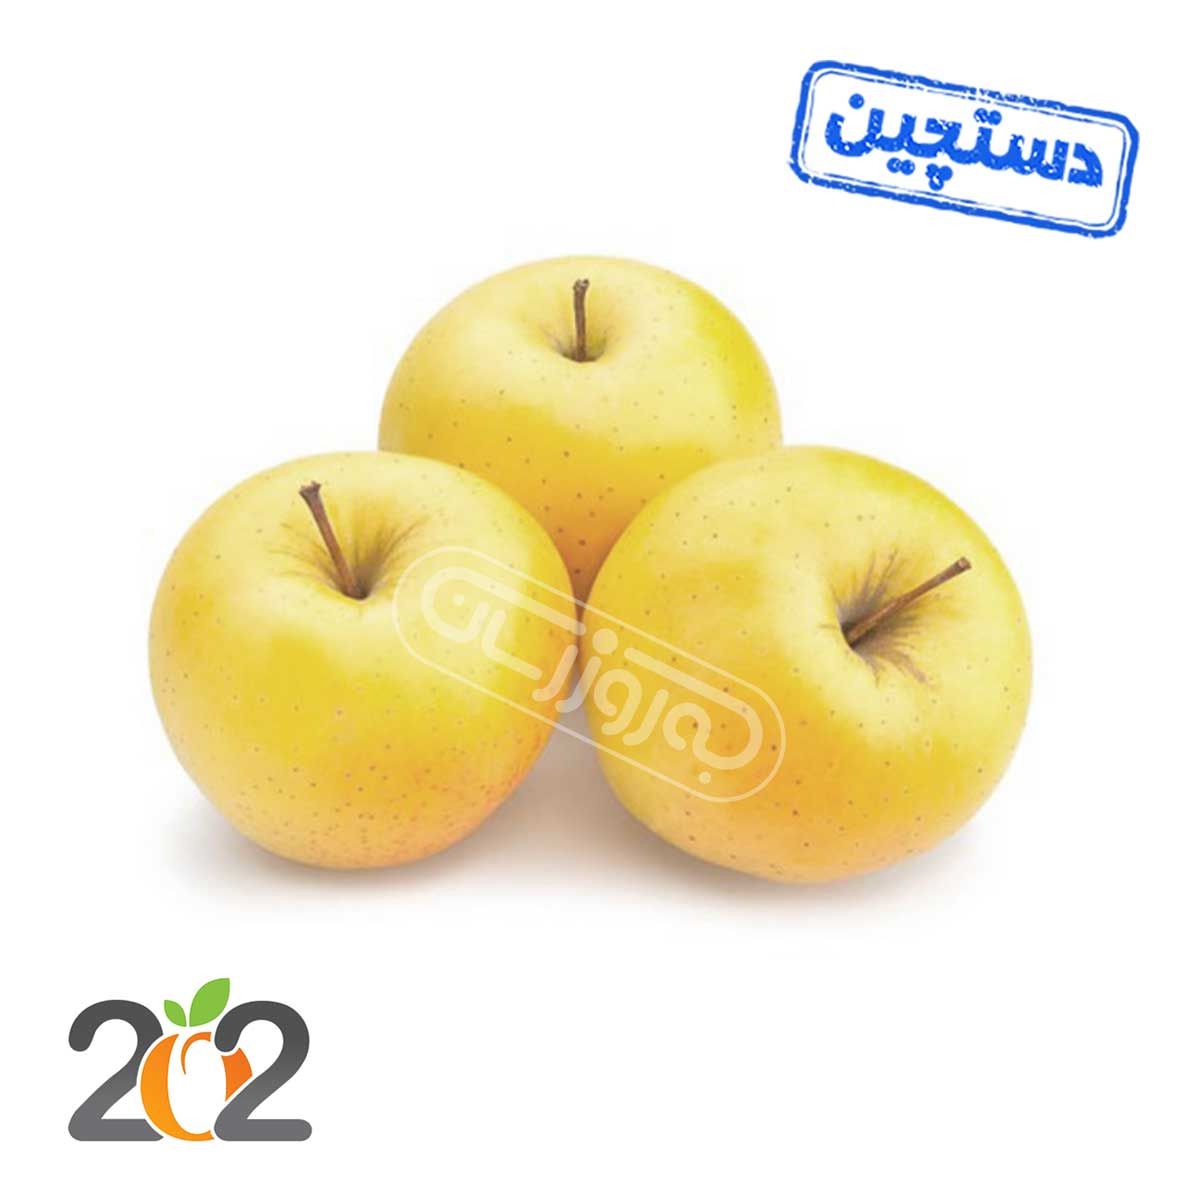 سیب زرد دماوند دستچین برند 202 ( قیمت ، خرید آنلاین ) - بازار آنلاین به‌روزمارت